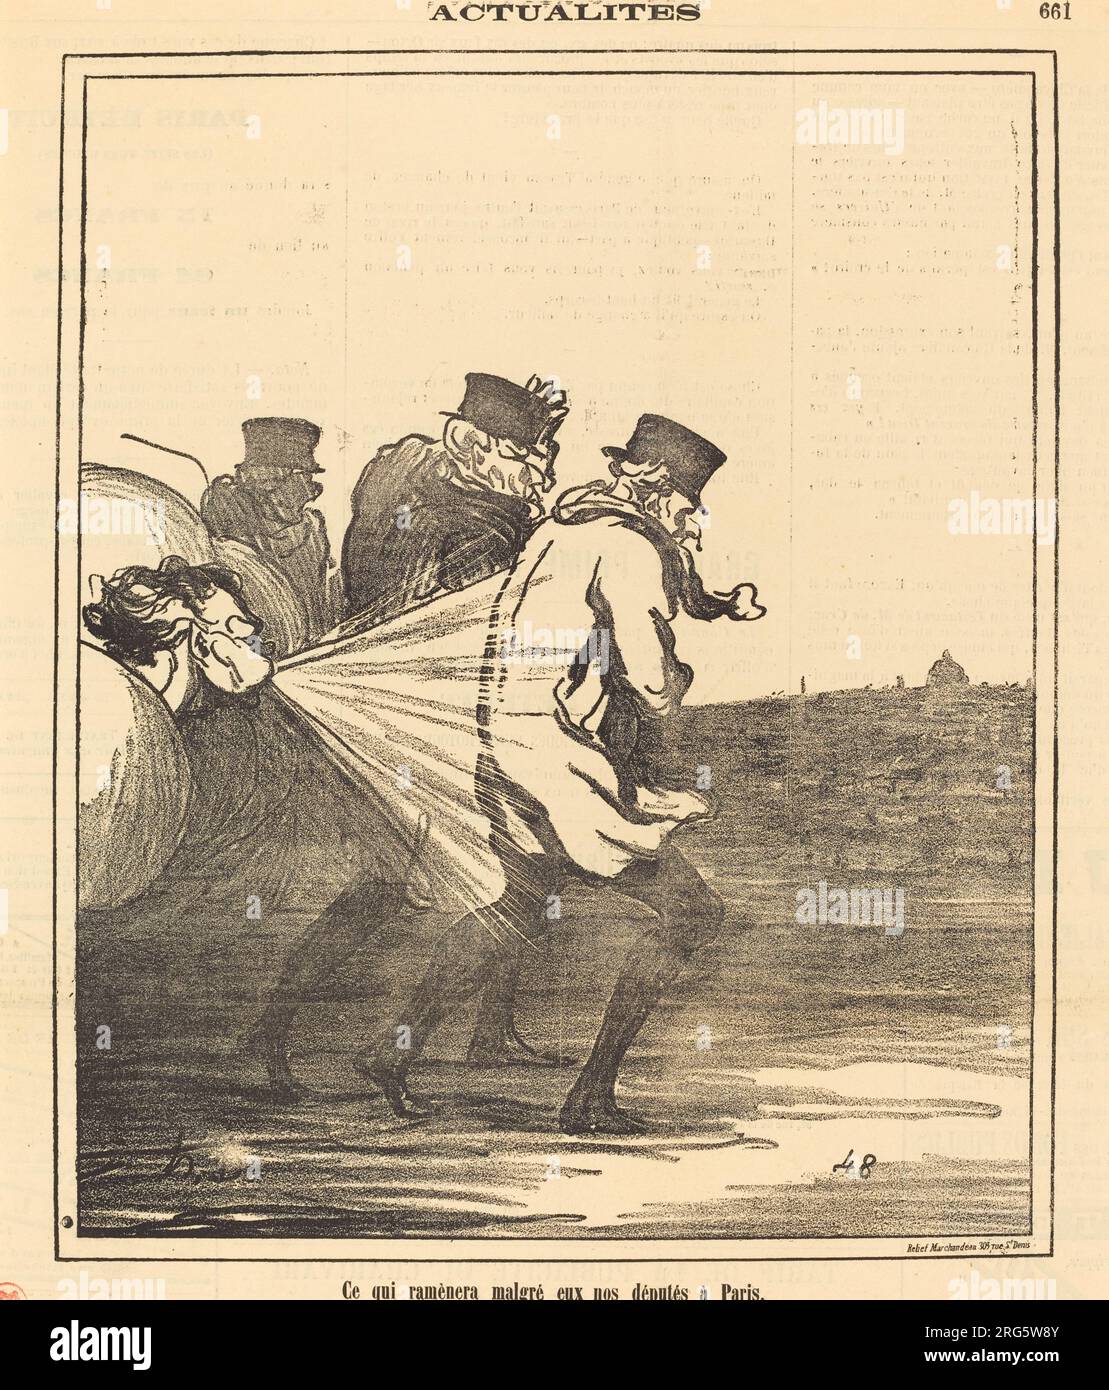 Ce qui ramènera... nos députés à Paris 1871 by Honoré Daumier Stock Photo